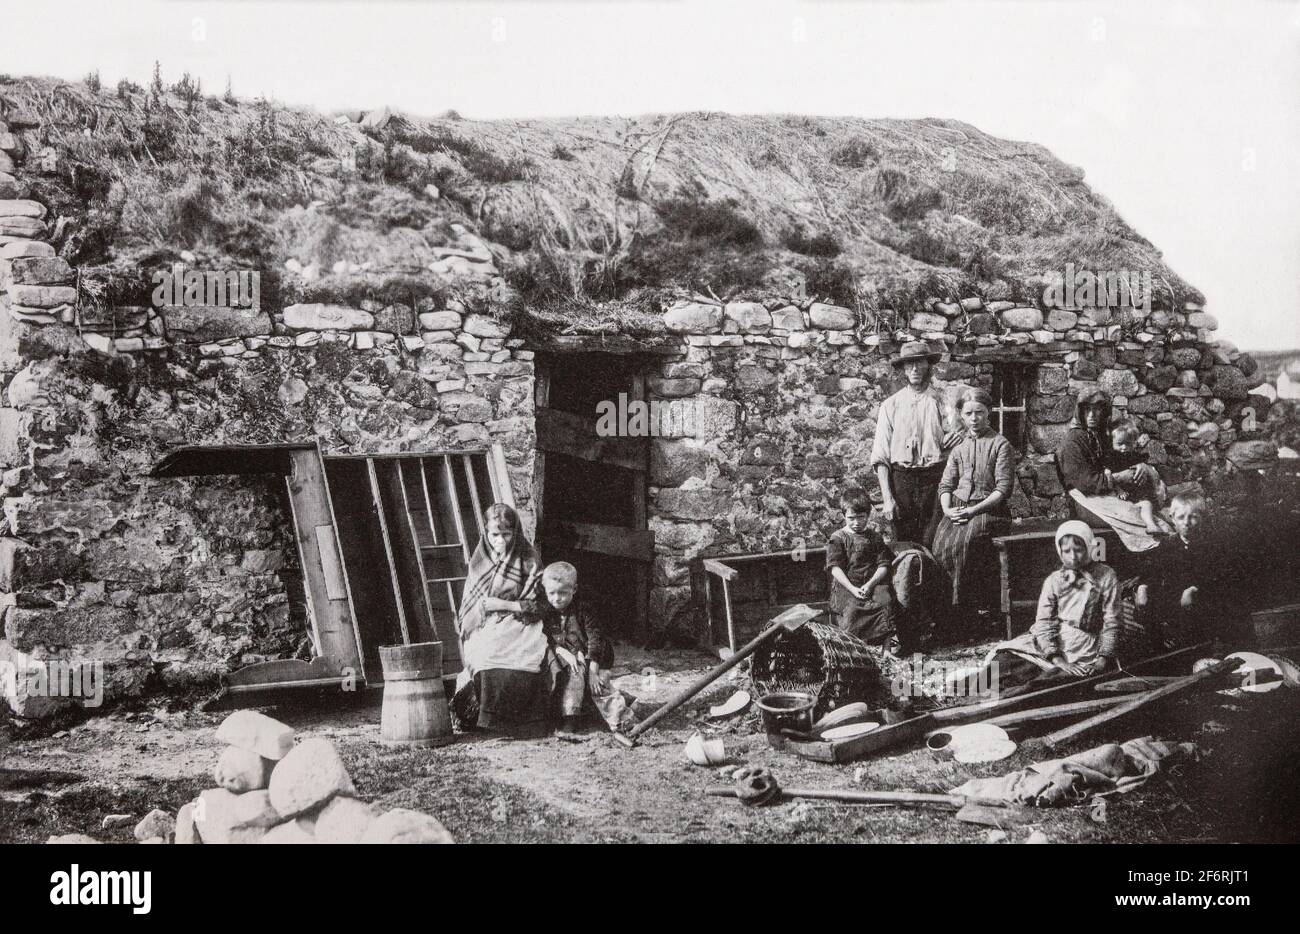 Ein Vintage-Foto von der Räumung einer irischen Familie in den 1890er Jahren. Vermieter, deren Land mit ärmeren Mietern überfüllt war, wurden jetzt mit hohen Tarifen konfrontiert und viele begannen, die armen Mieter von ihren kleinen Grundstücken zu räumen. Die große Masse an Zwangsräumungen kam in den 1840er Jahren, und als die Polizei anfing, eine Zählung zu führen, verzeichneten sie insgesamt fast 250,000 Personen, die zwischen 1849 und 1854 offiziell vertrieben wurden. Die Räumungen dauerten bis in die 1890er Jahre an. Stockfoto